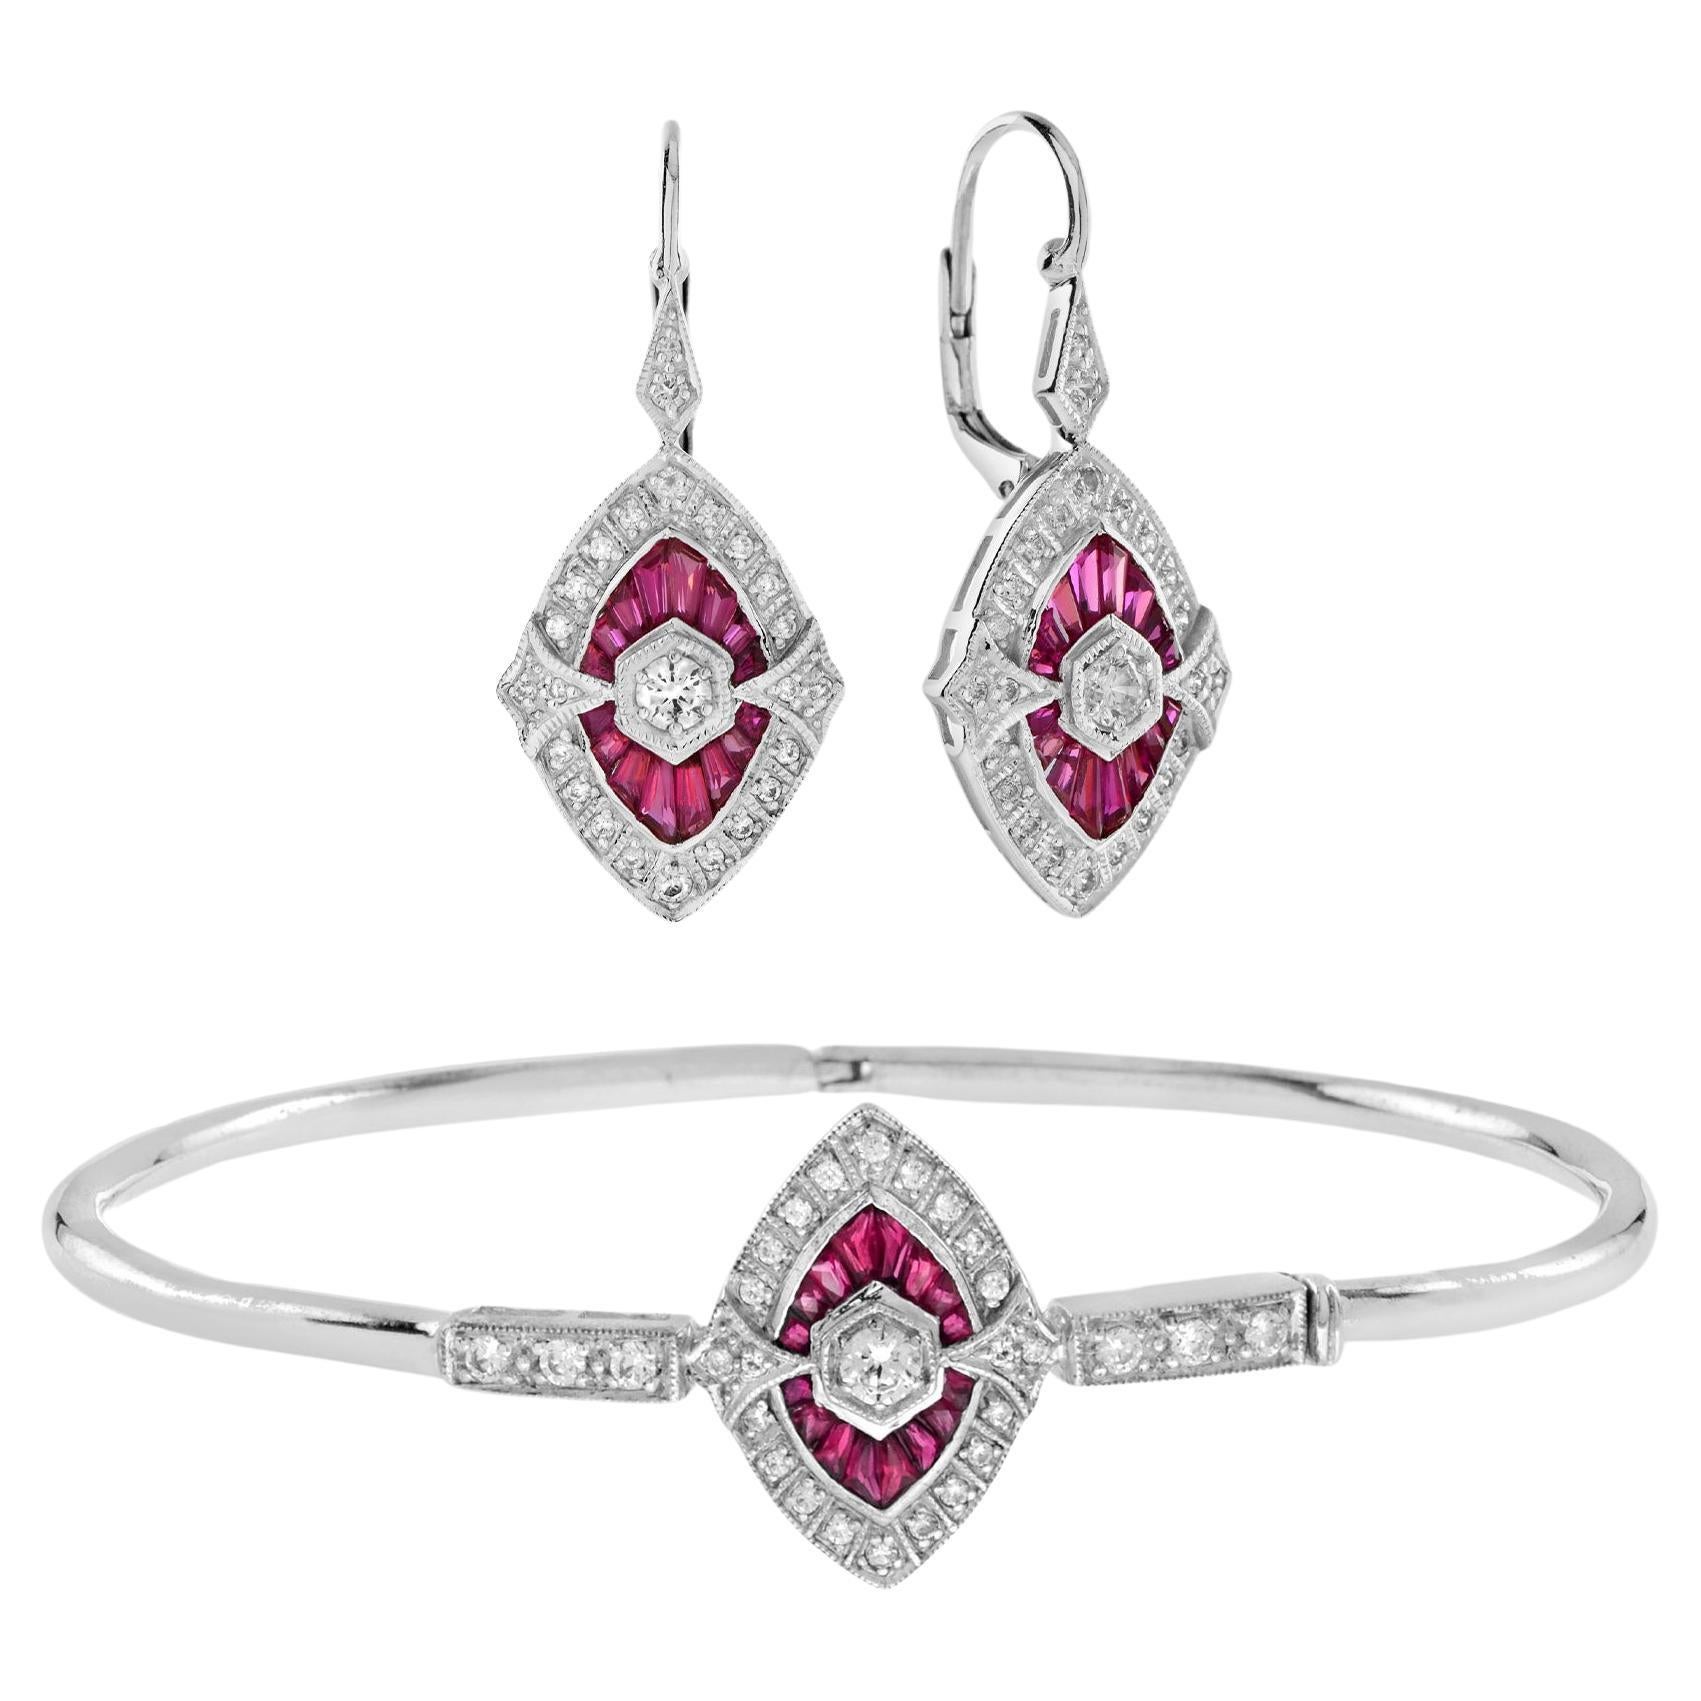 Boucles d'oreilles pendantes et bracelet jonc de style Art déco en or blanc 18 carats avec diamants et rubis